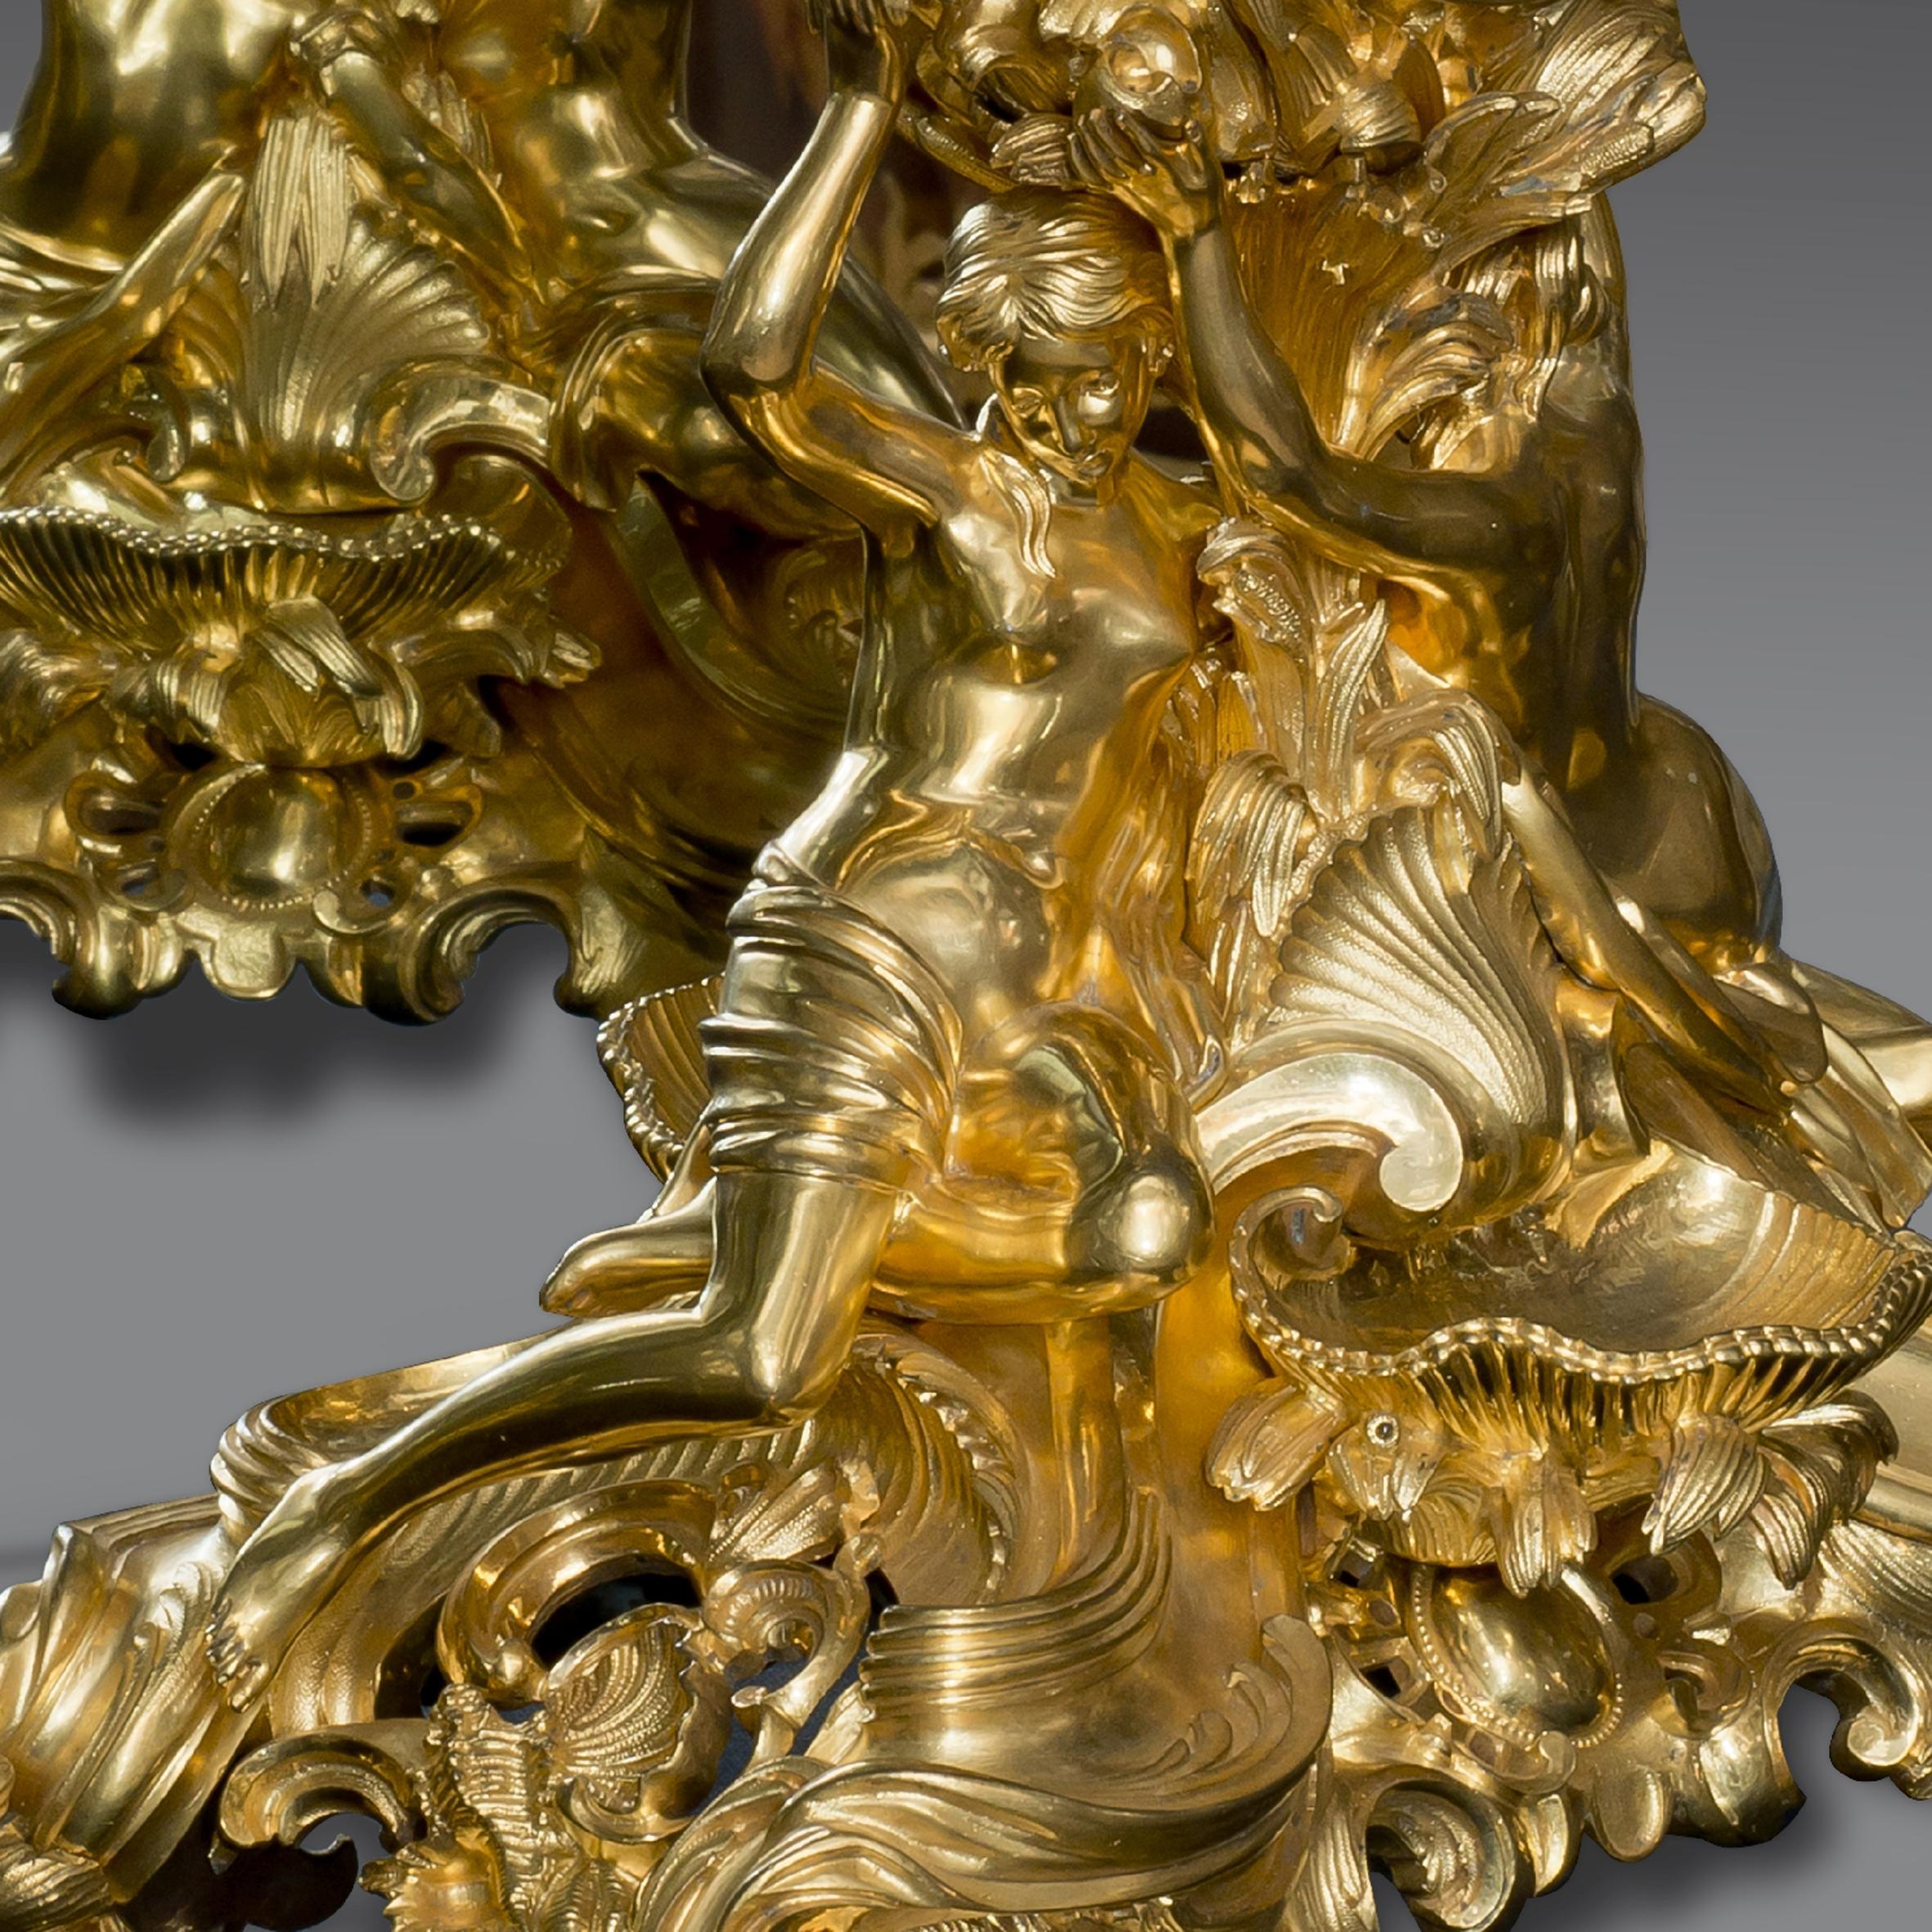 Une rare horloge Napoléon III à double face en bronze doré.

Le cadran émaillé blanc est signé 